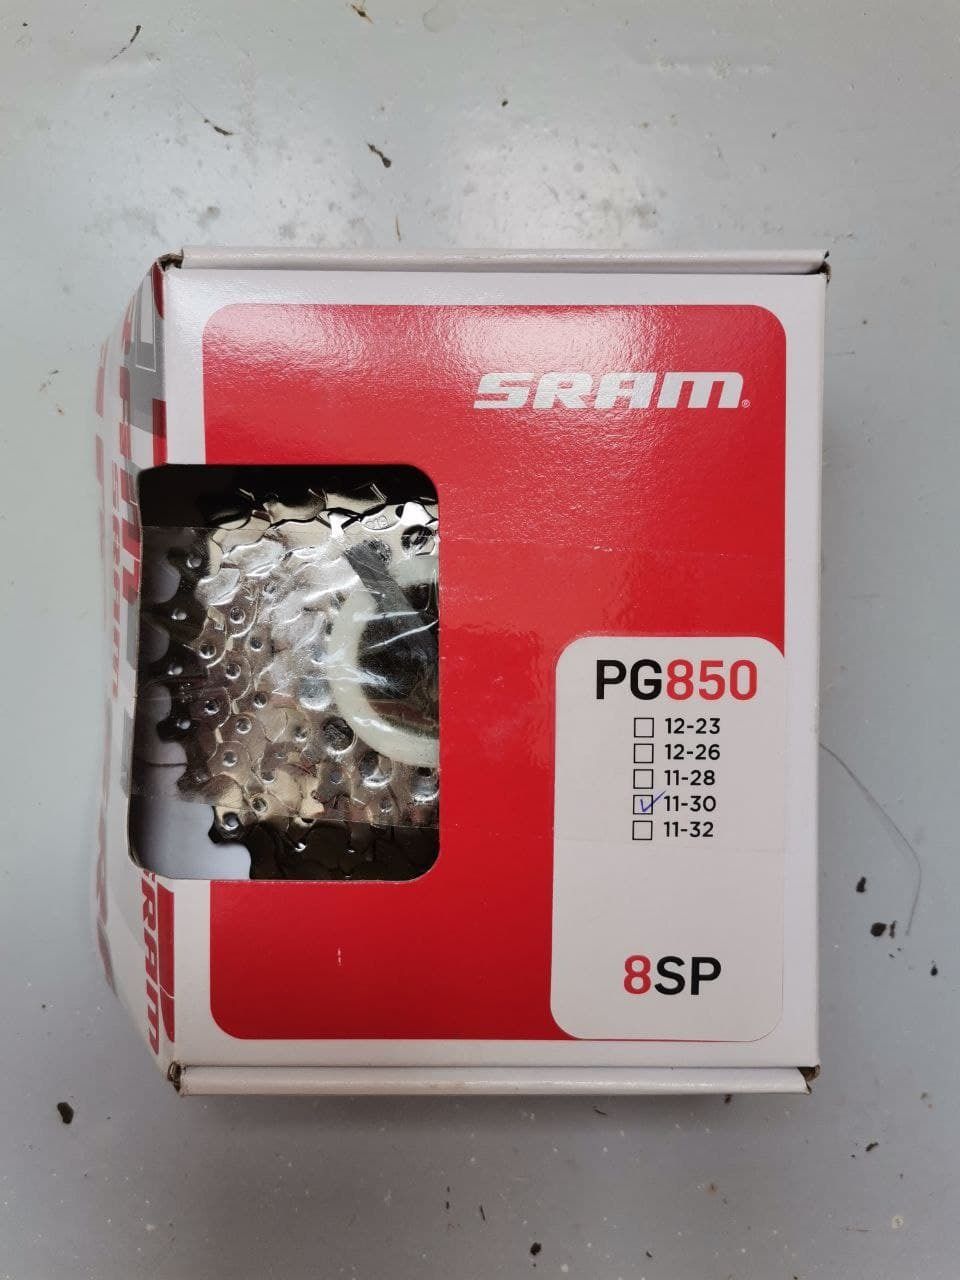 Новая кассета Sram PG850, 8ск, 11-30